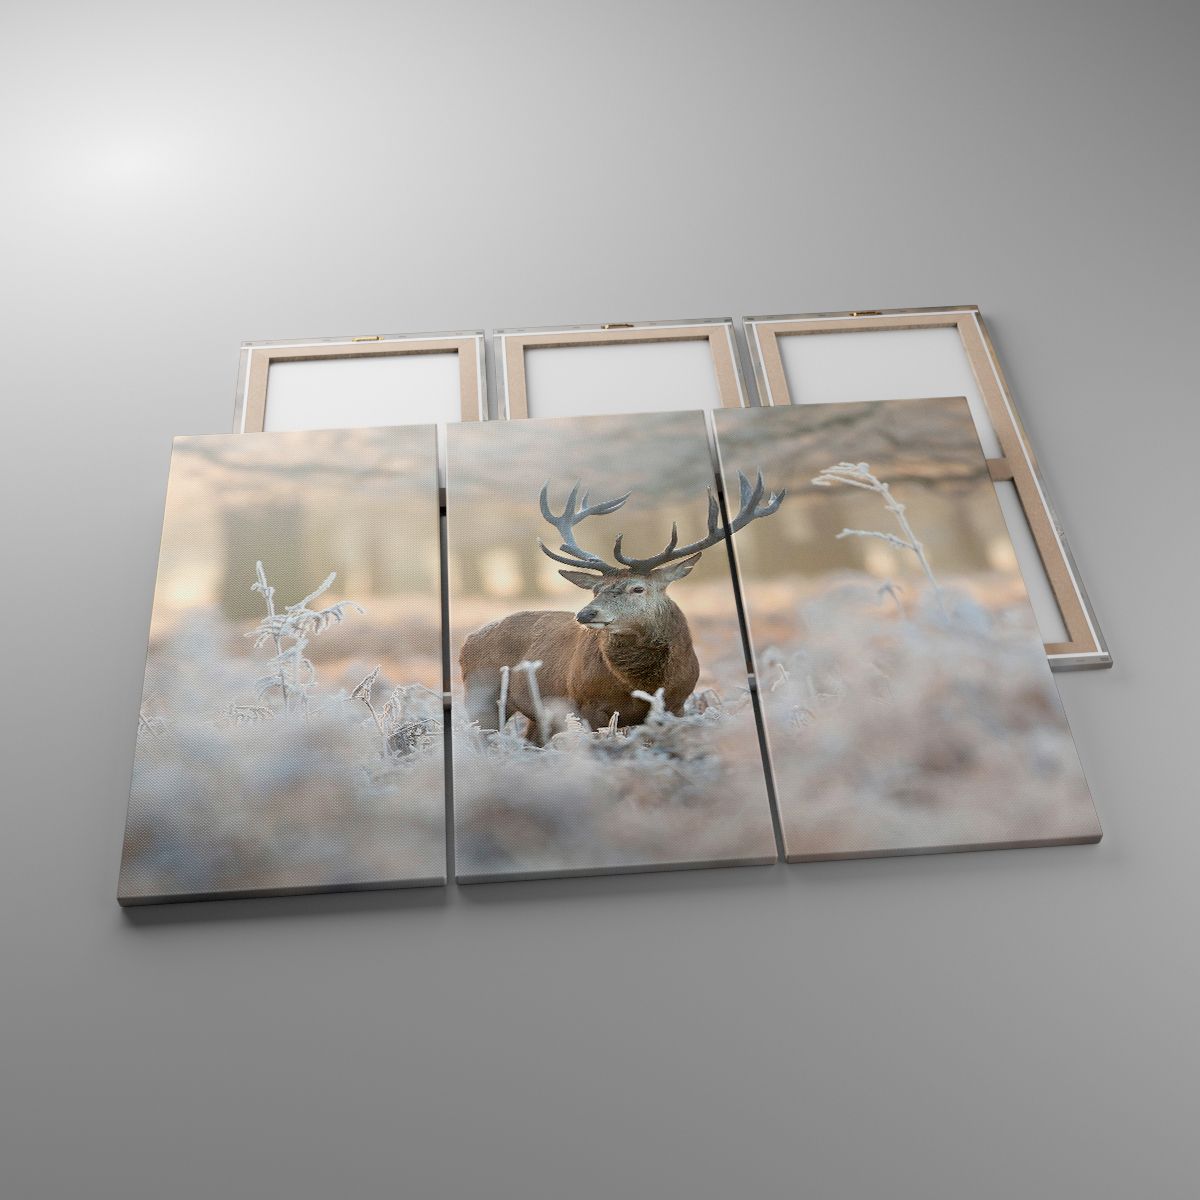 Leinwandbild Landschaft, Leinwandbild Reh, Leinwandbild Tiere, Leinwandbild Wald, Leinwandbild Winter